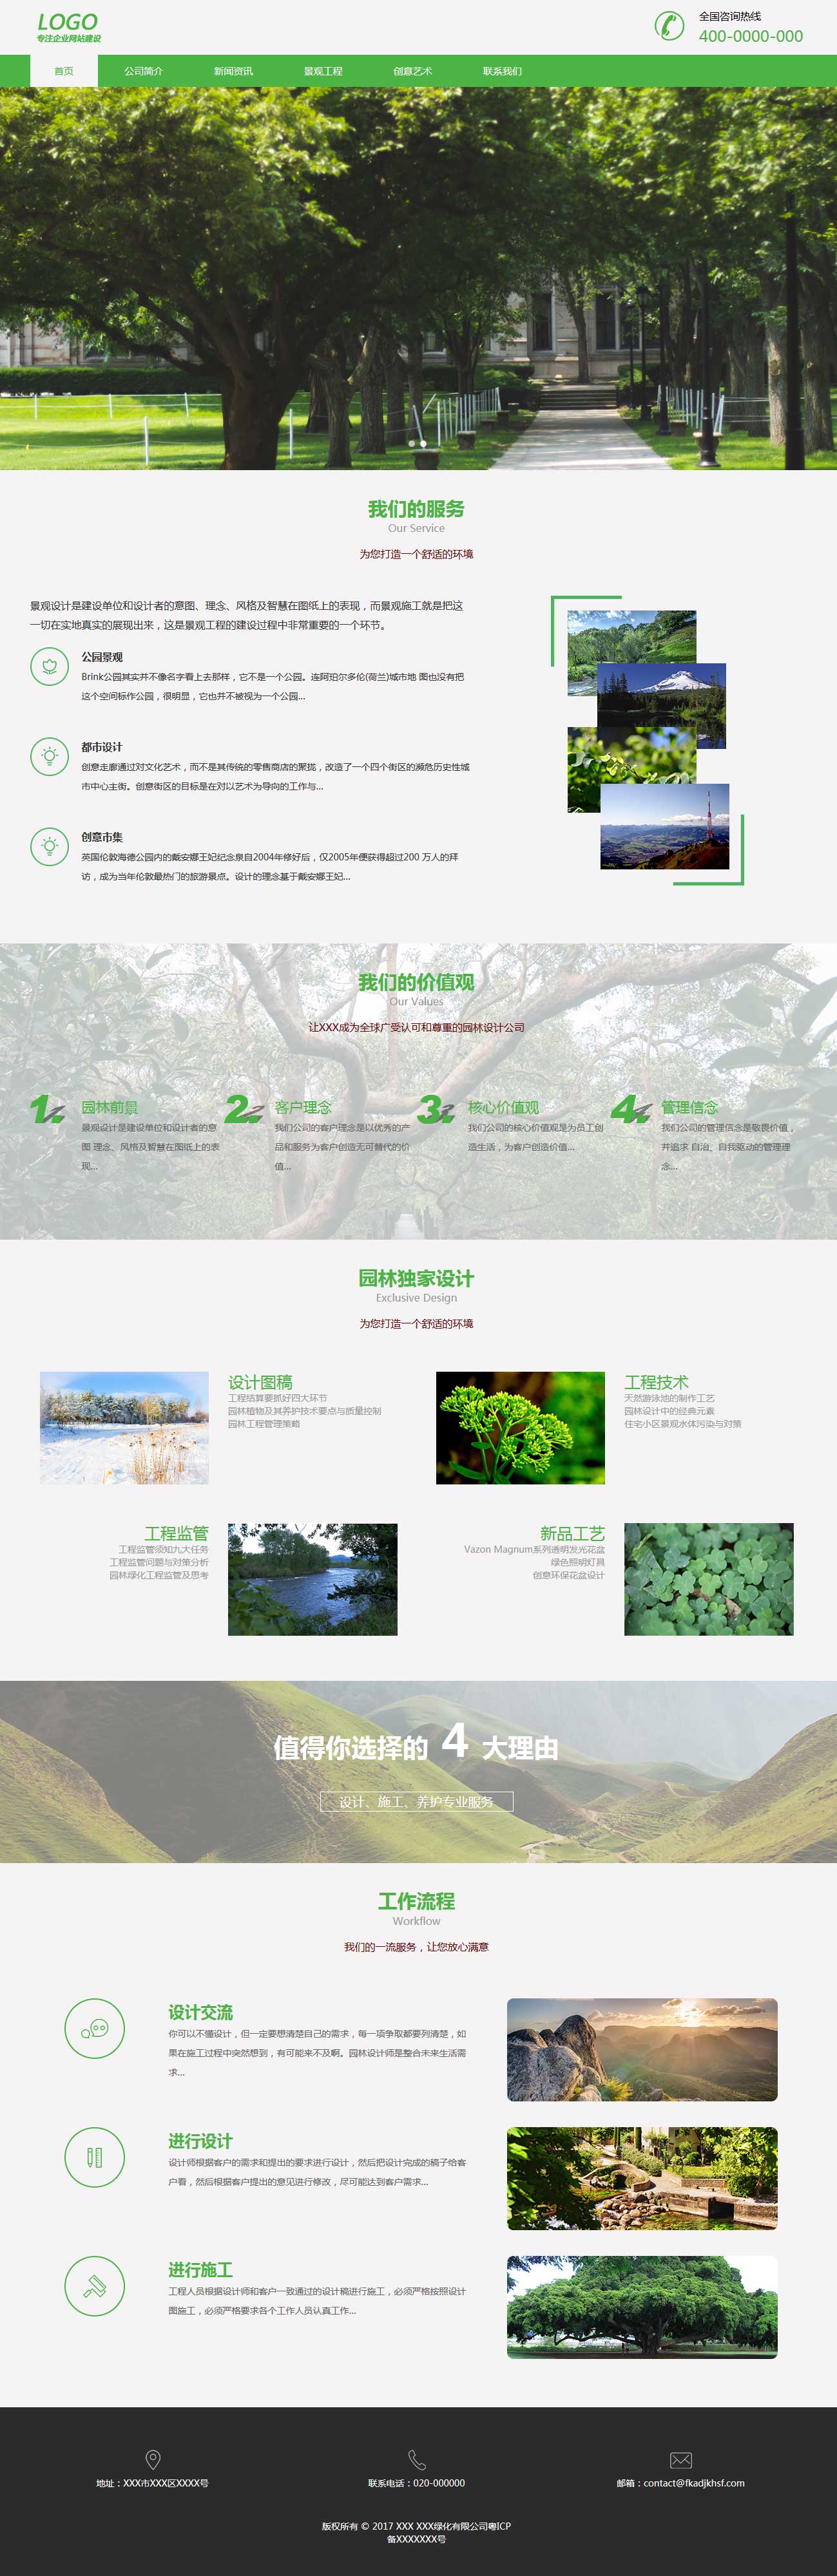 【响应式】绿化企业网站模板